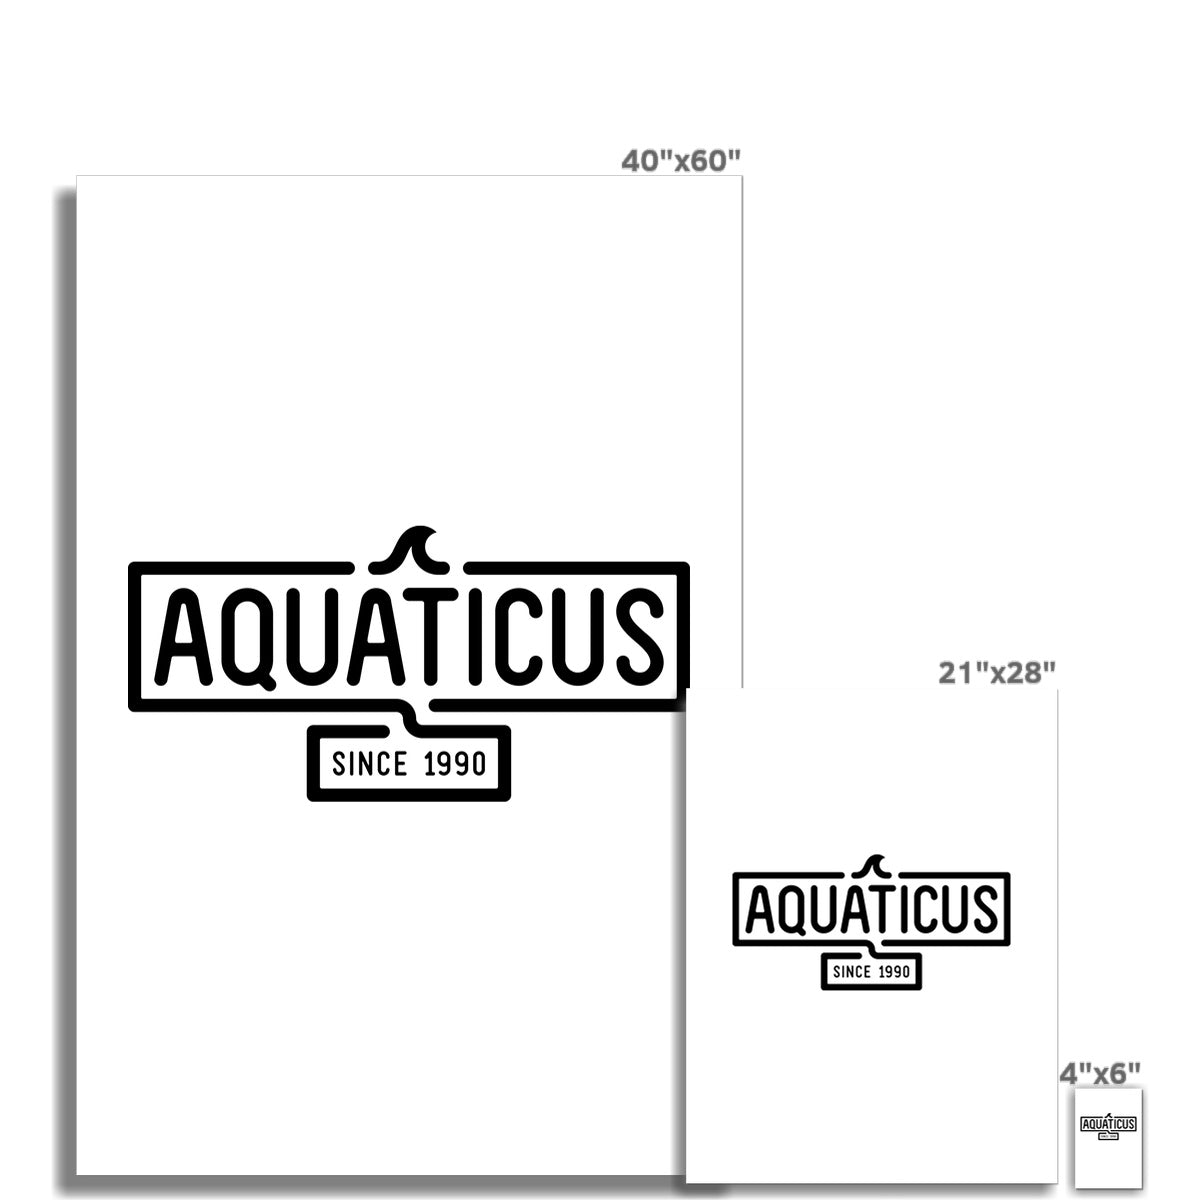 AQUA - 01 - Aquaticus - Wandkunstposter